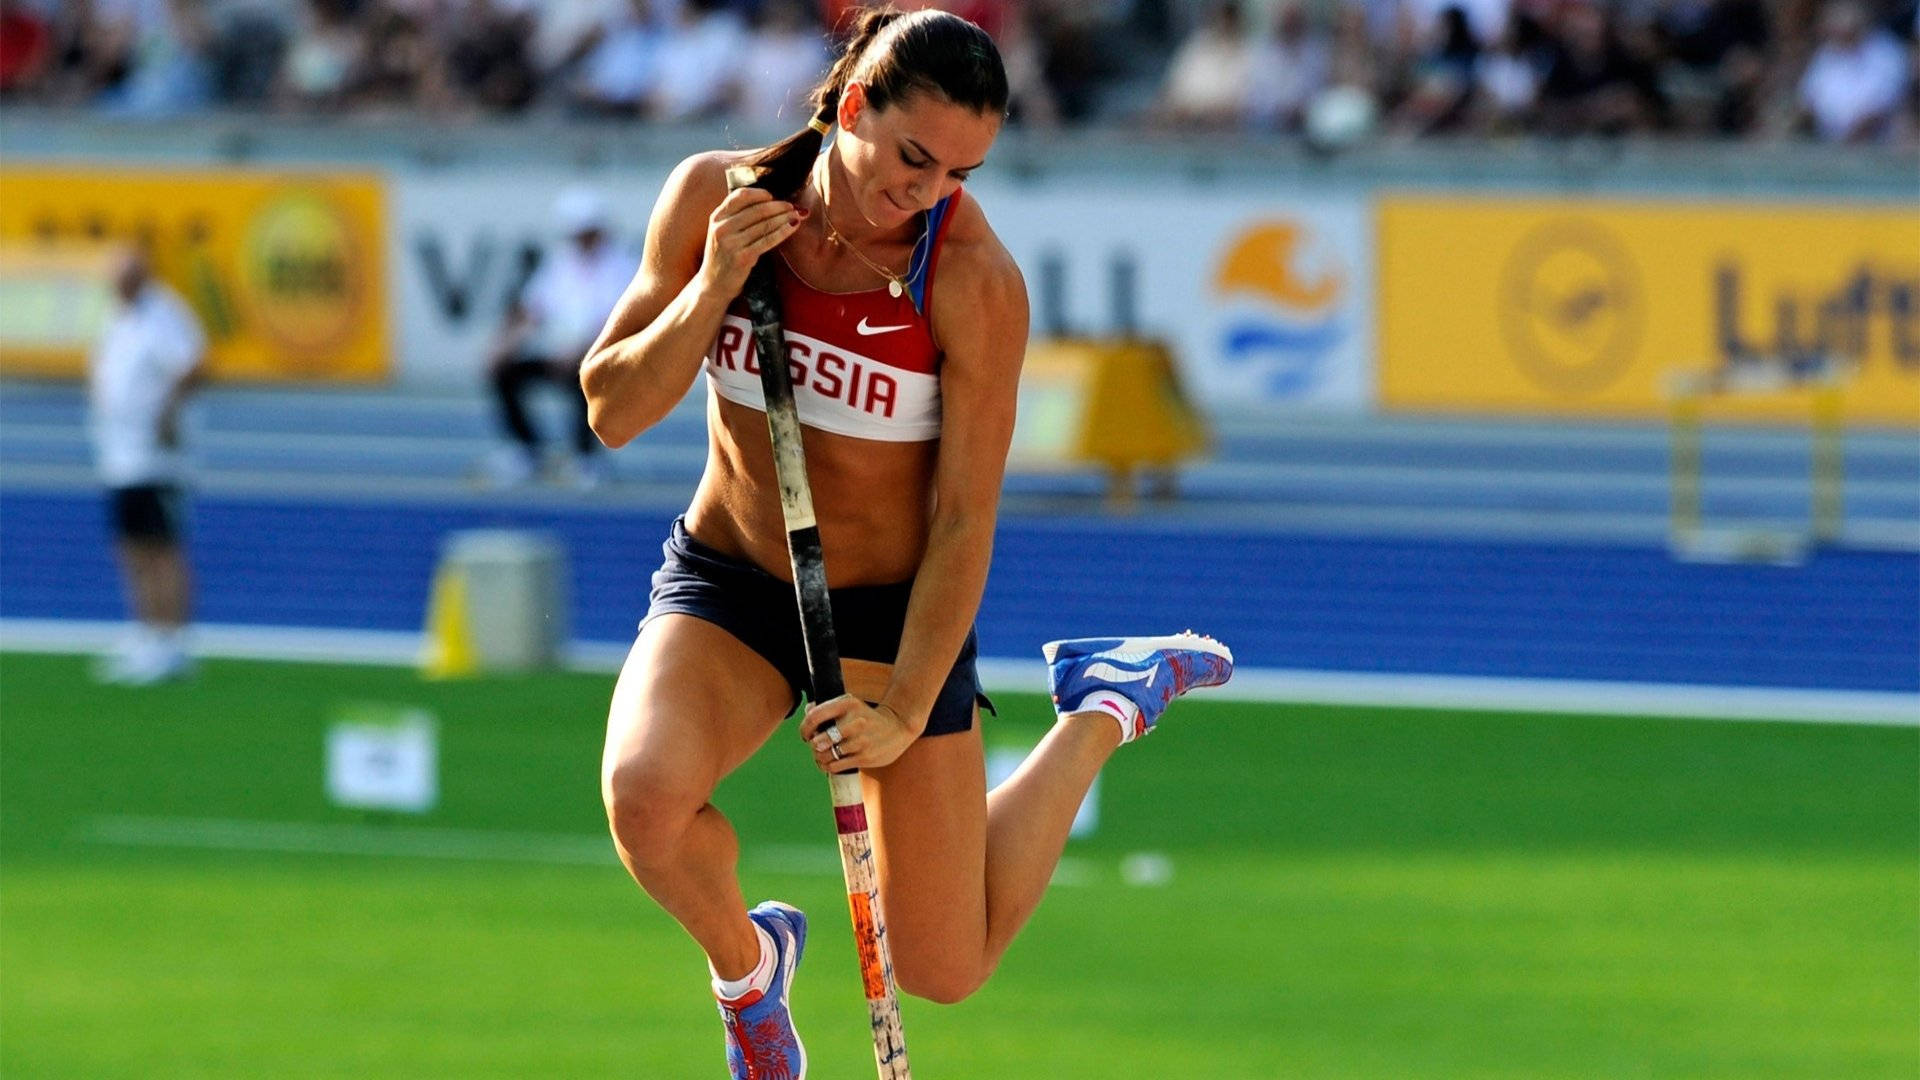 Athletic Olympic Champion Yelena Isinbayeva Background